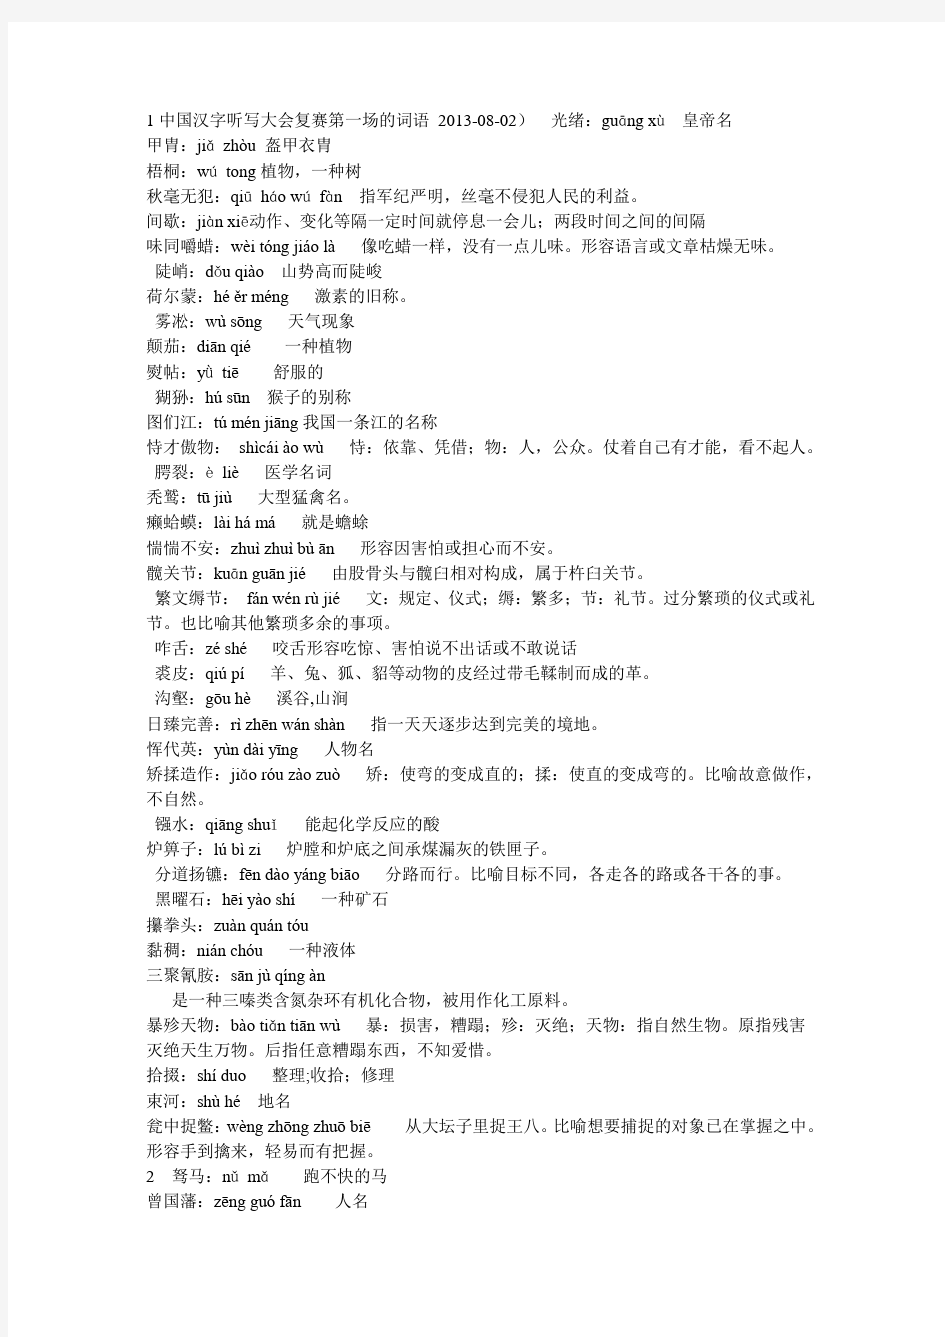 1中国汉字听写大会复赛第一场的词语-2013